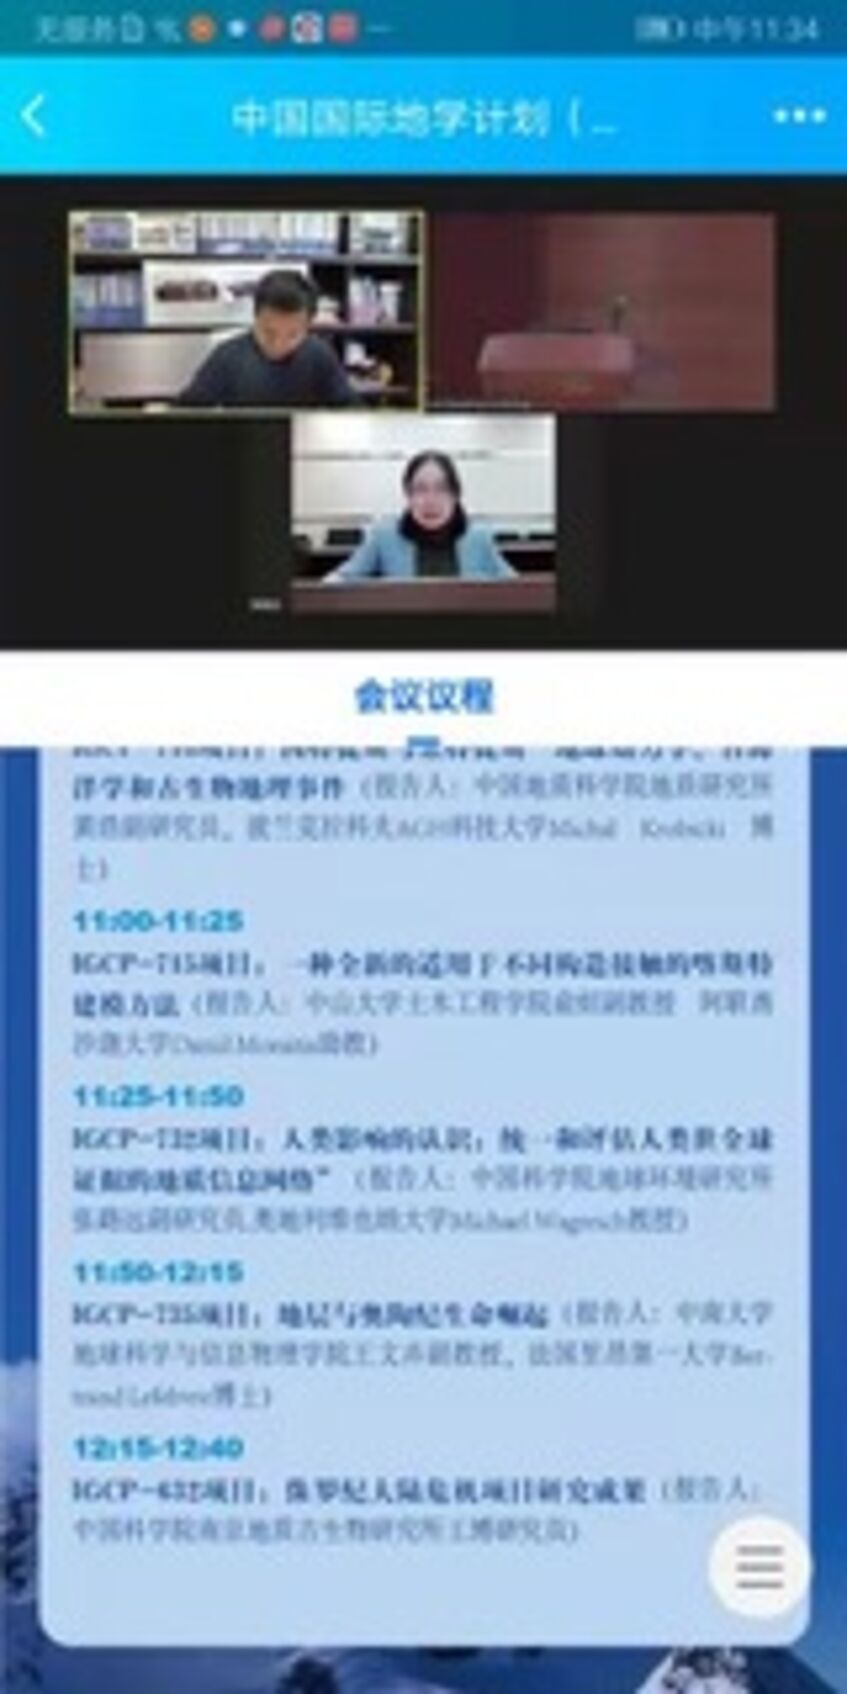 Chinese IGCP meeting